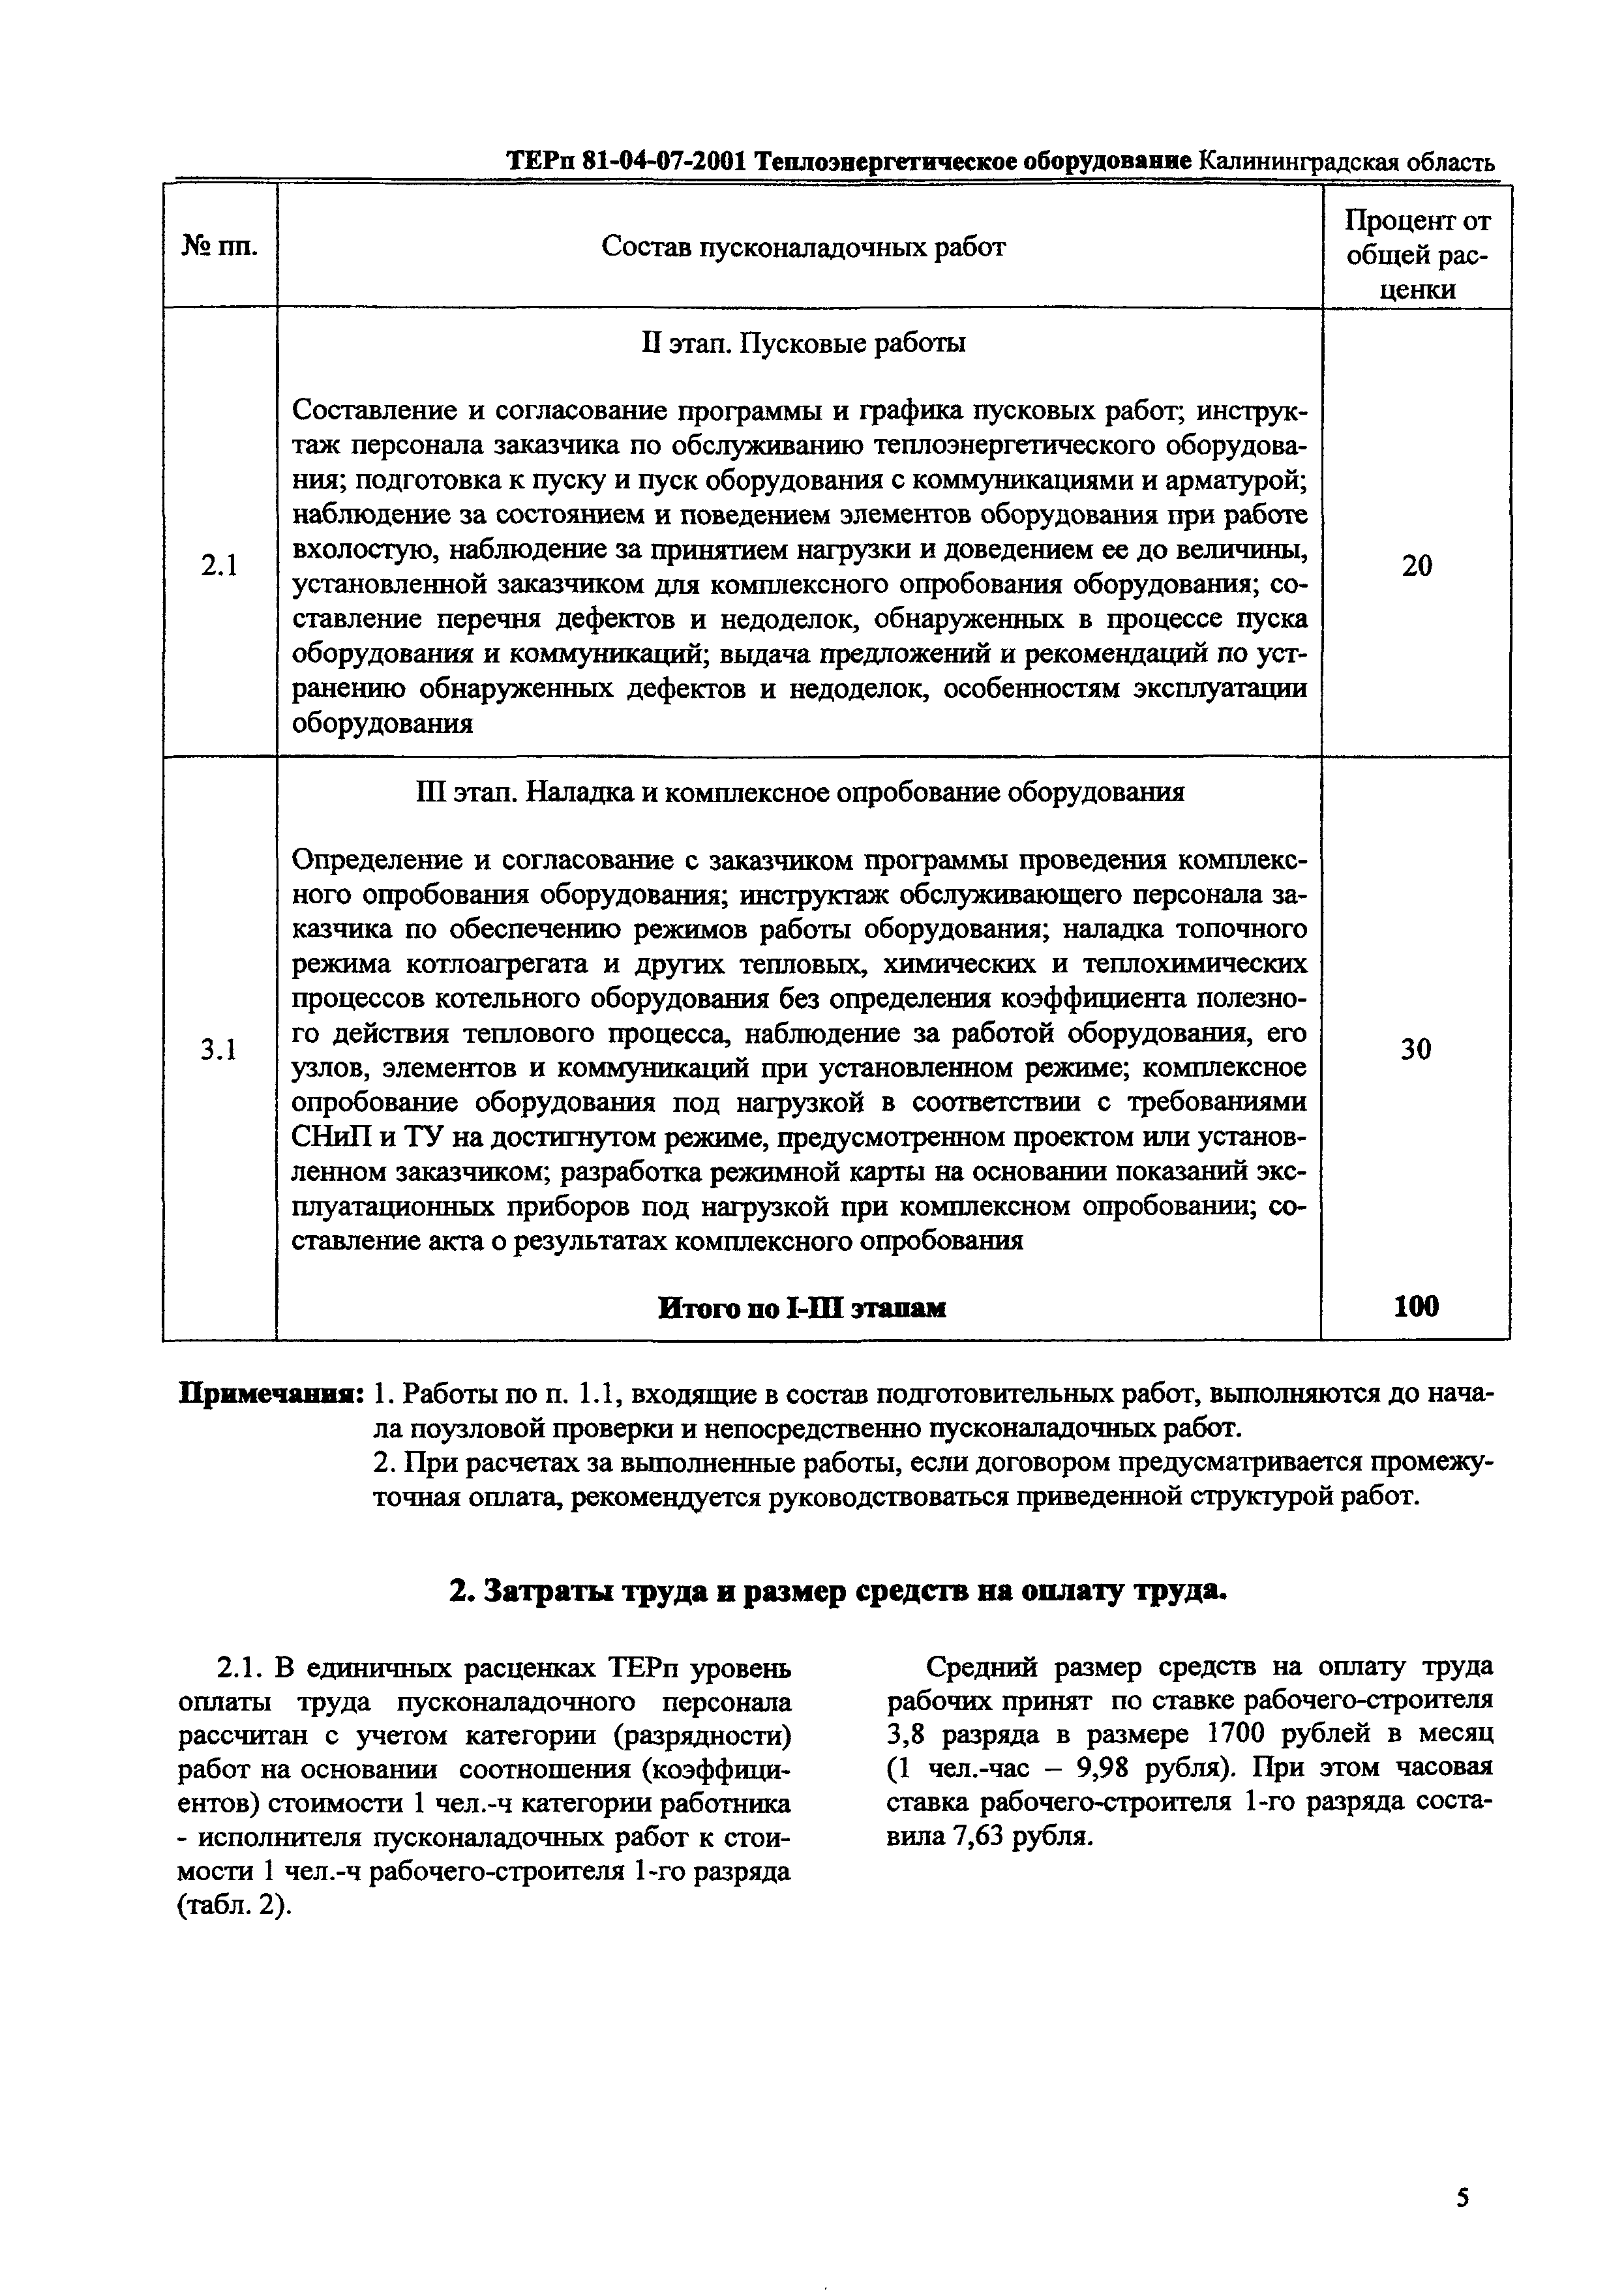 ТЕРп Калининградской области 2001-07